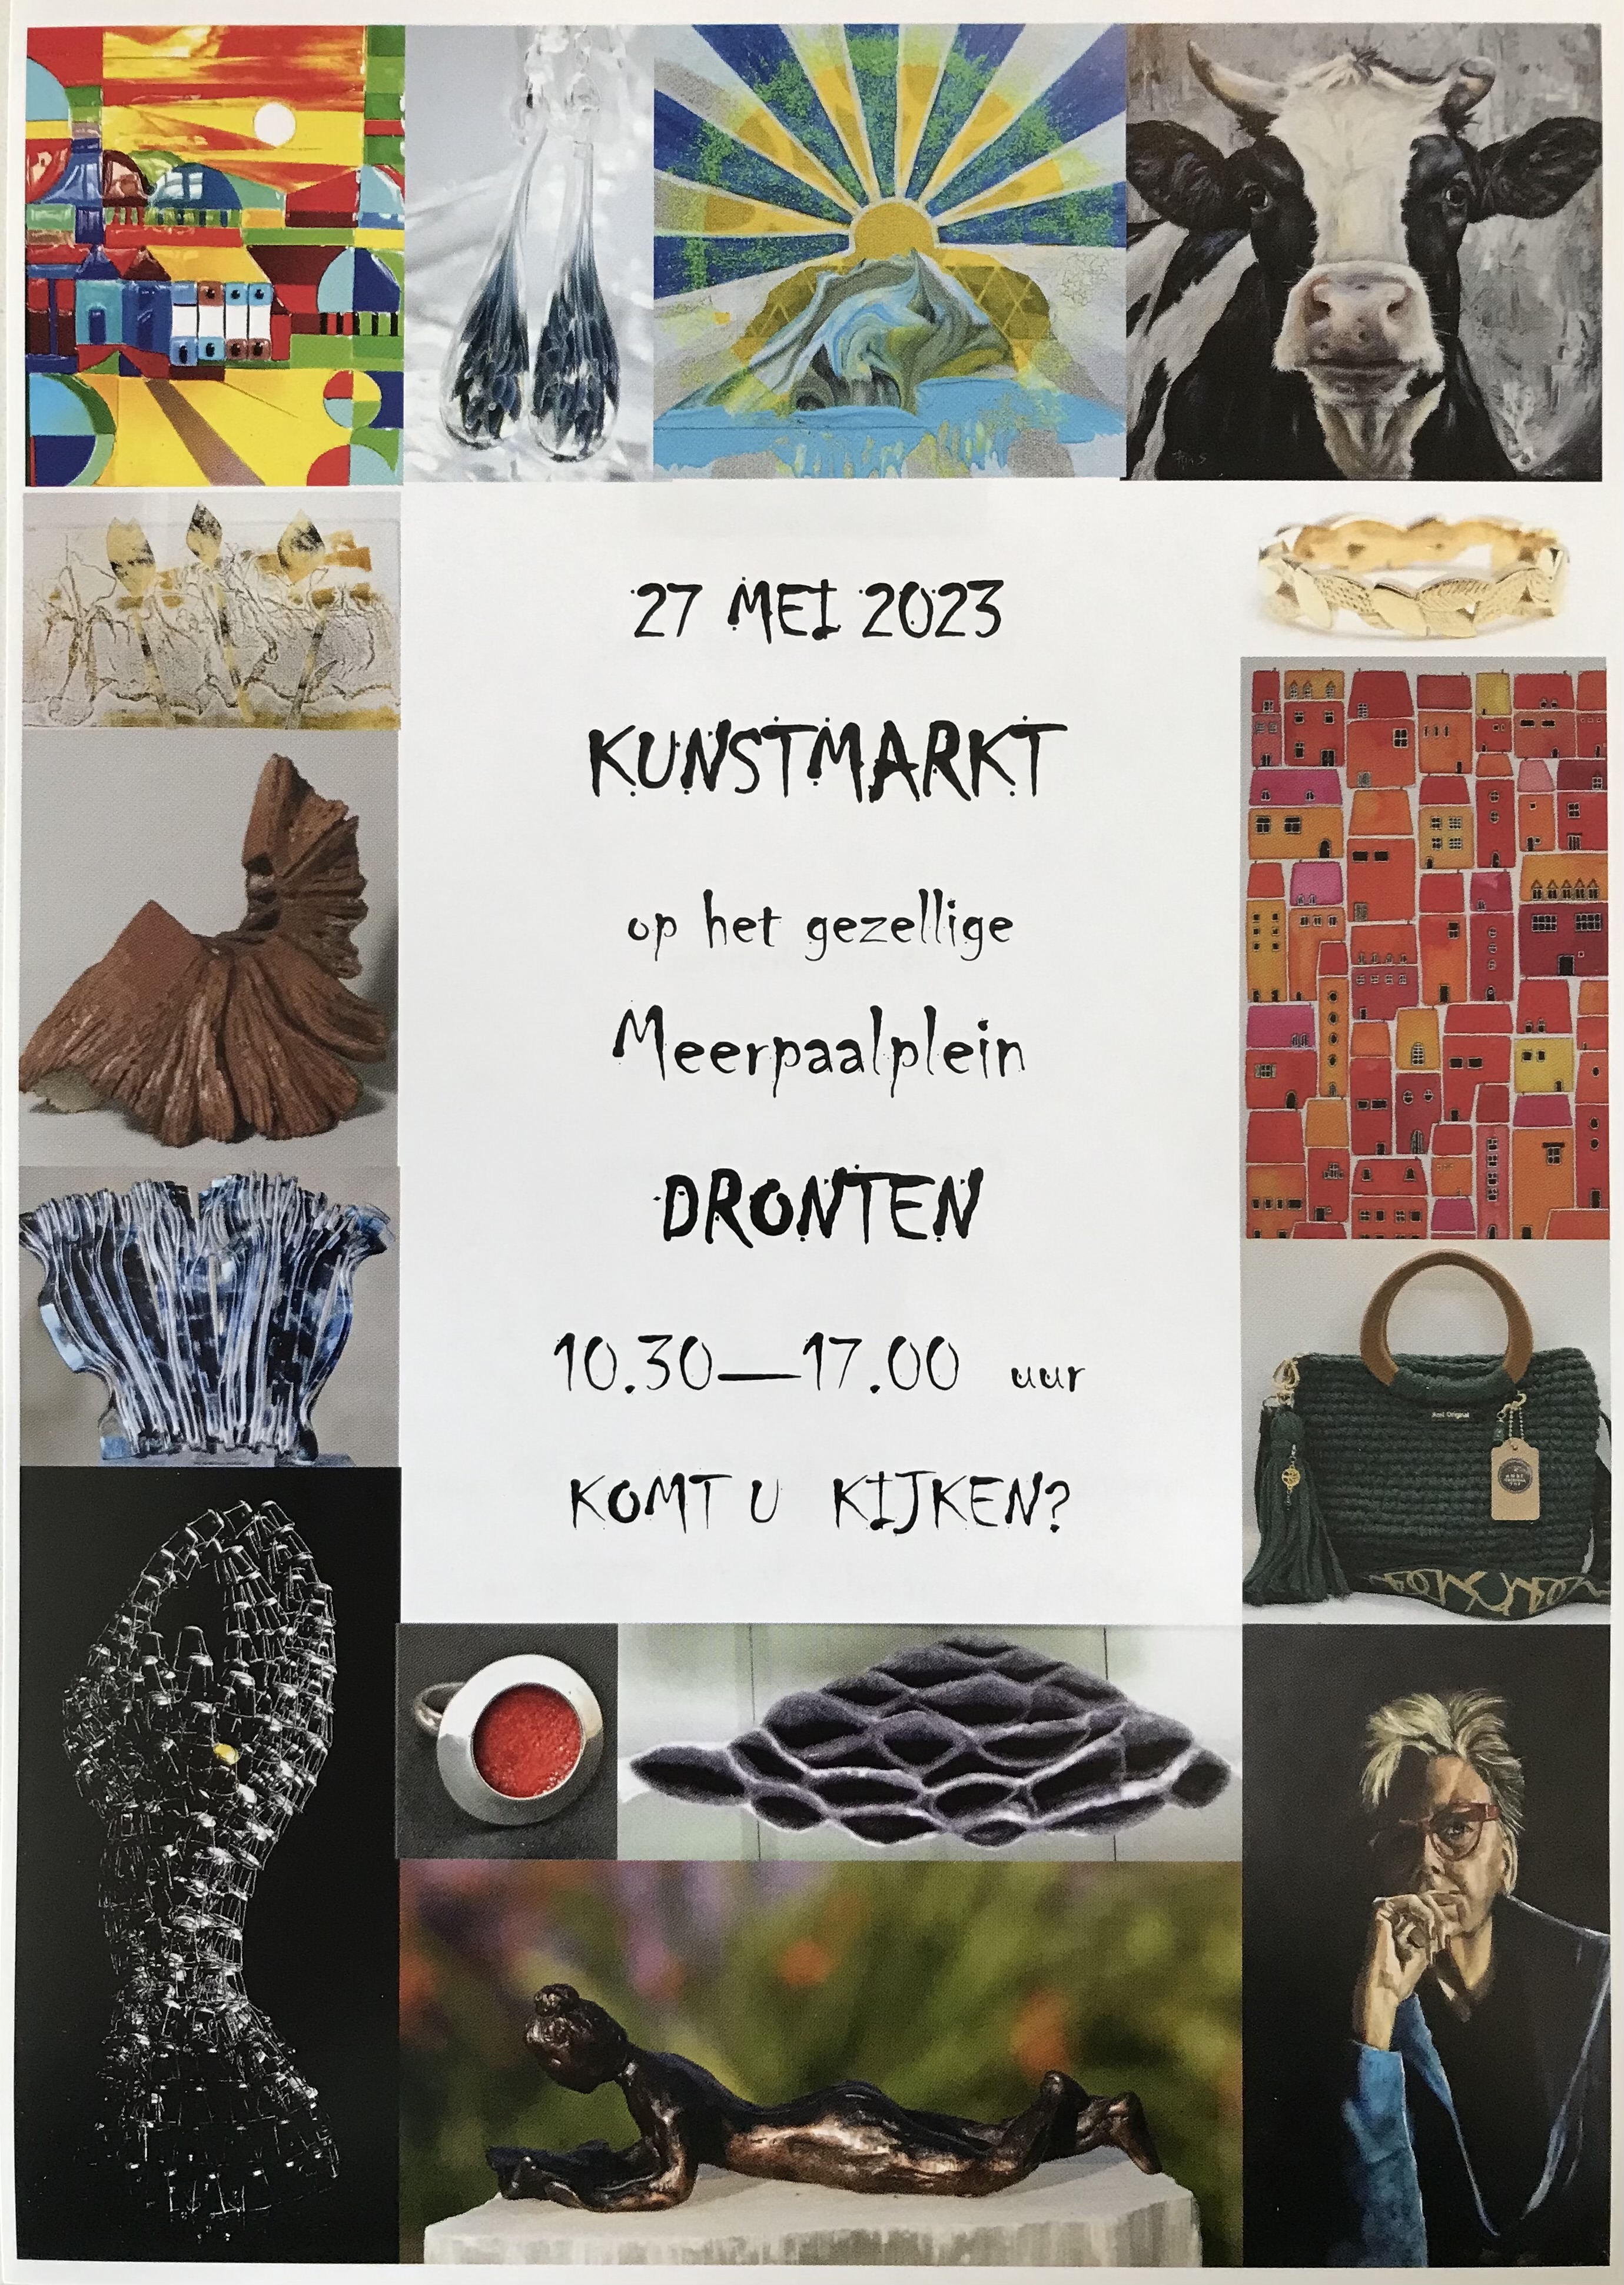 Kunstmarkt in Dronten op zaterdag 27 mei 2023.